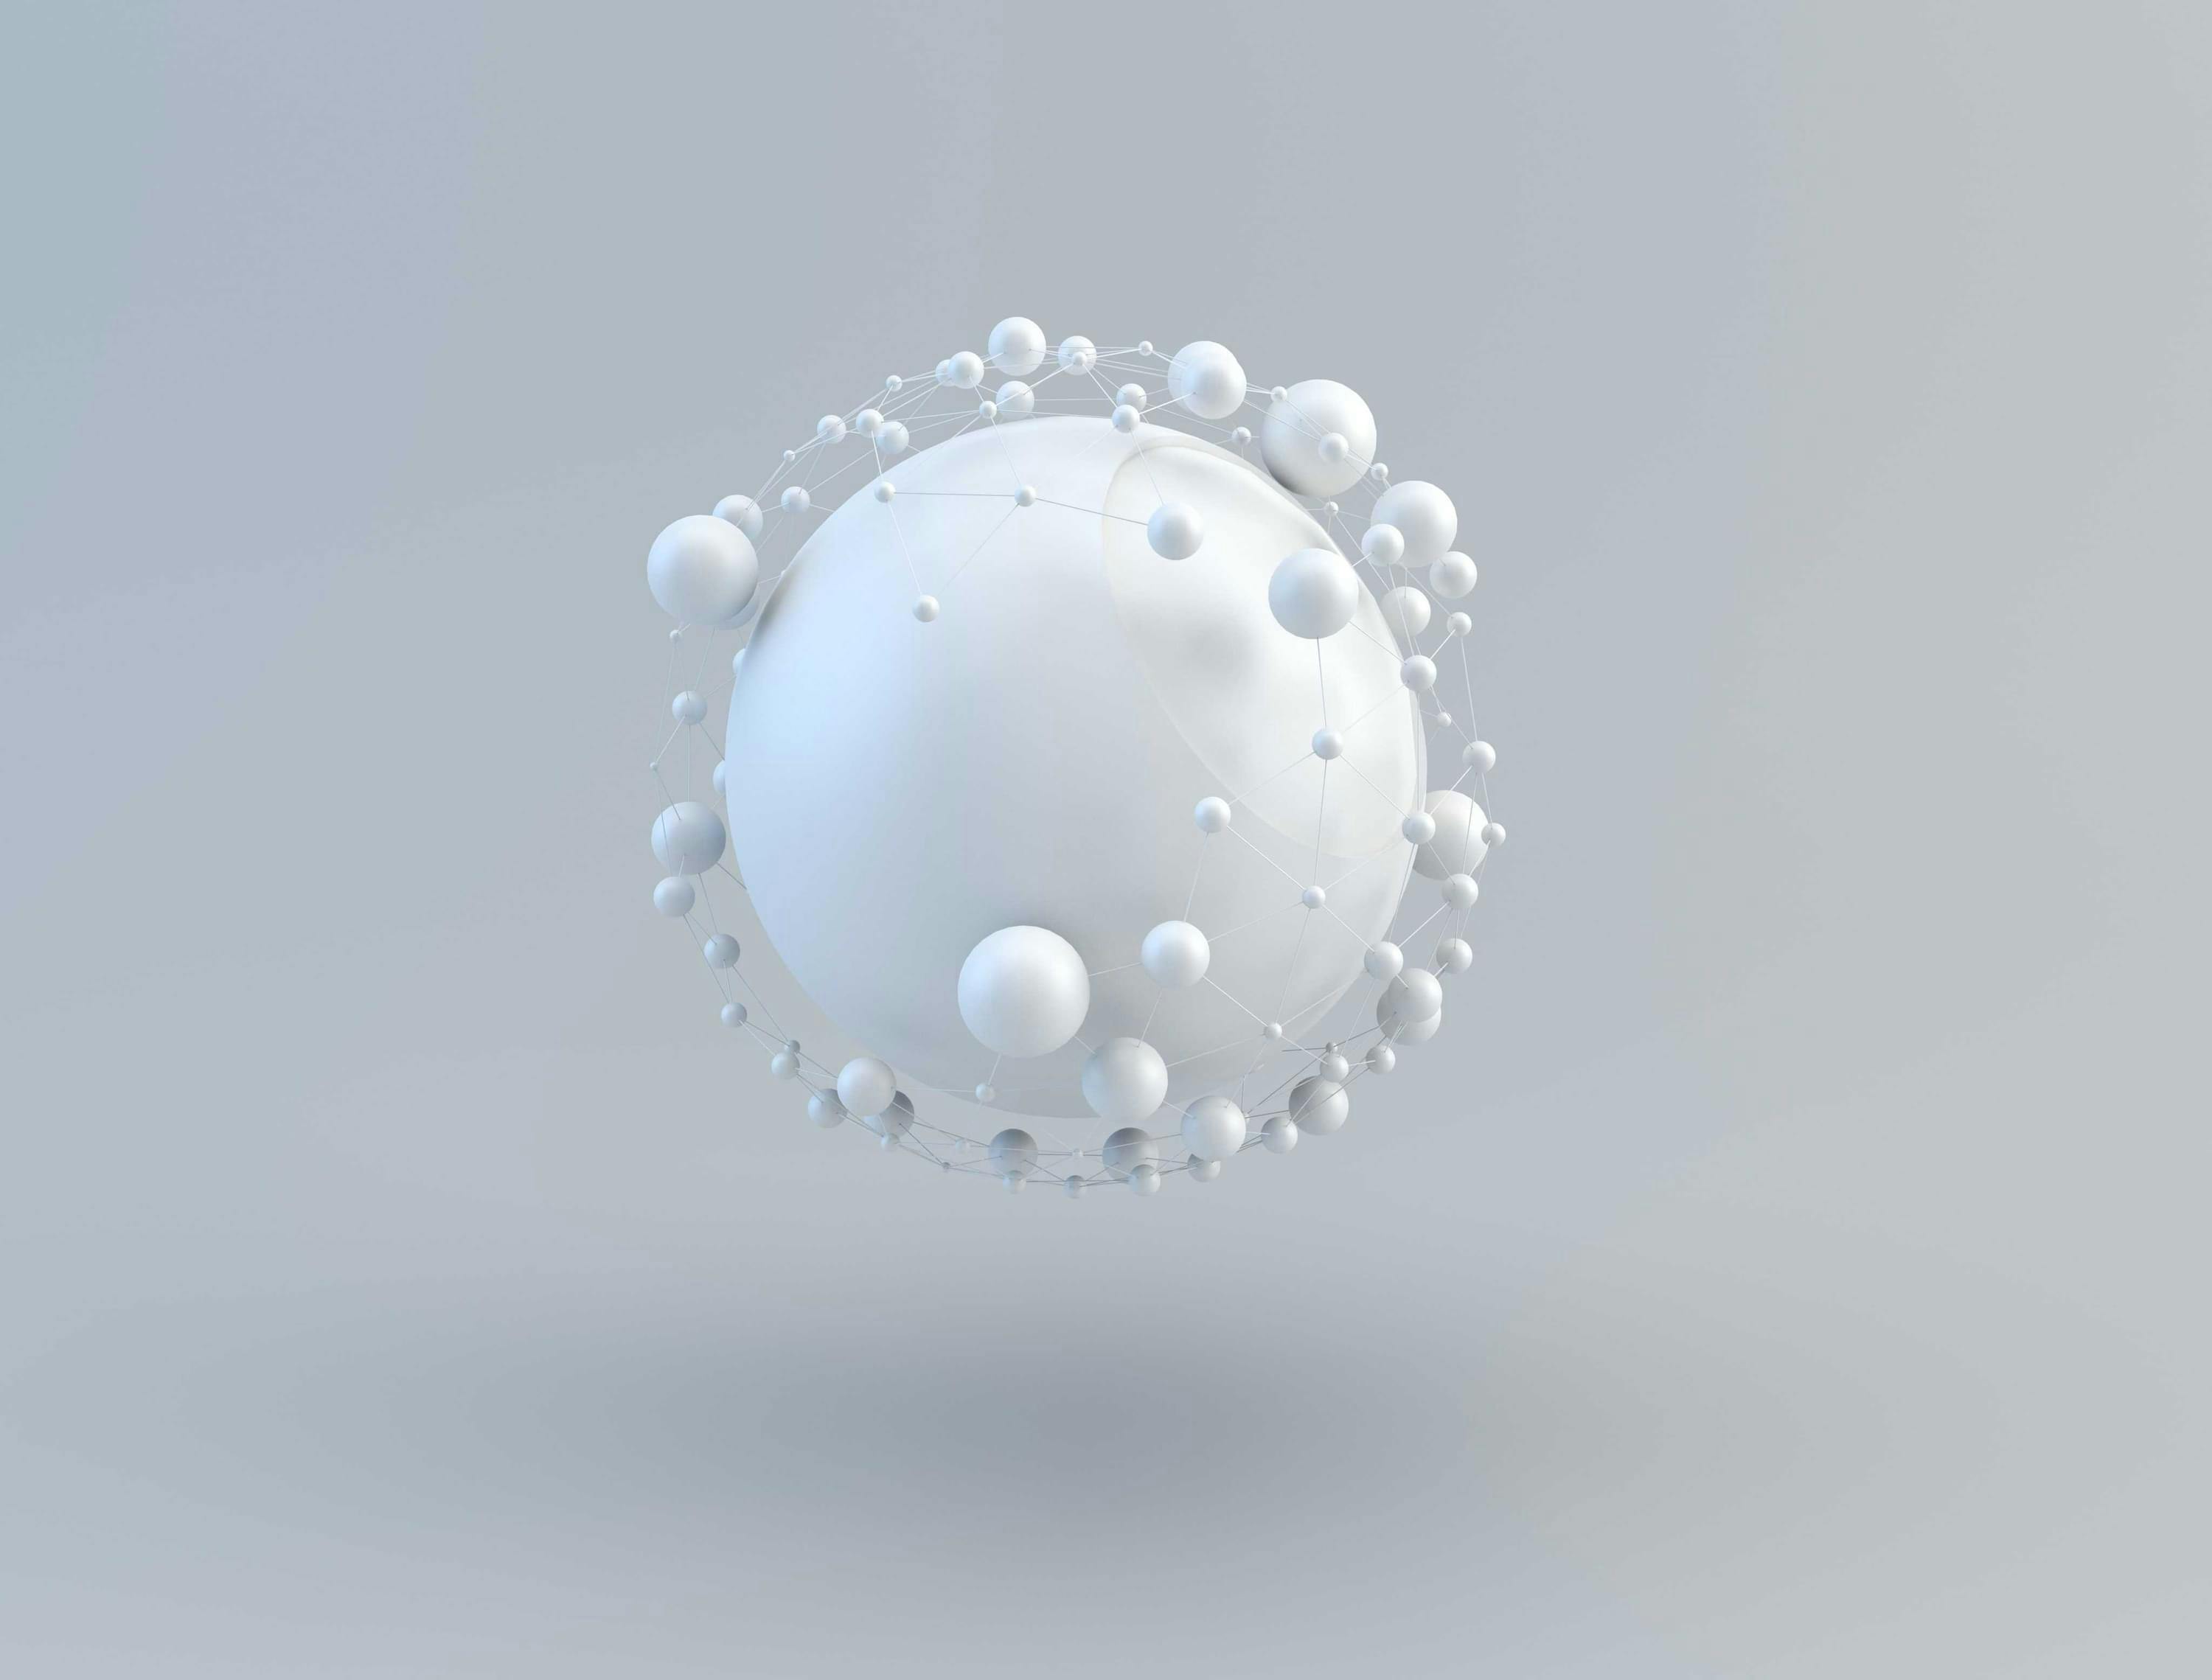 Zwevende witte bol met daaromheen een netwerk van kleinere bollen in verschillende groottes. Het lijkt op de aarde en hoe netwerken over de wereld met elkaar verbonden zijn. Digitaal draagt bij aan het versterken van netwerken.